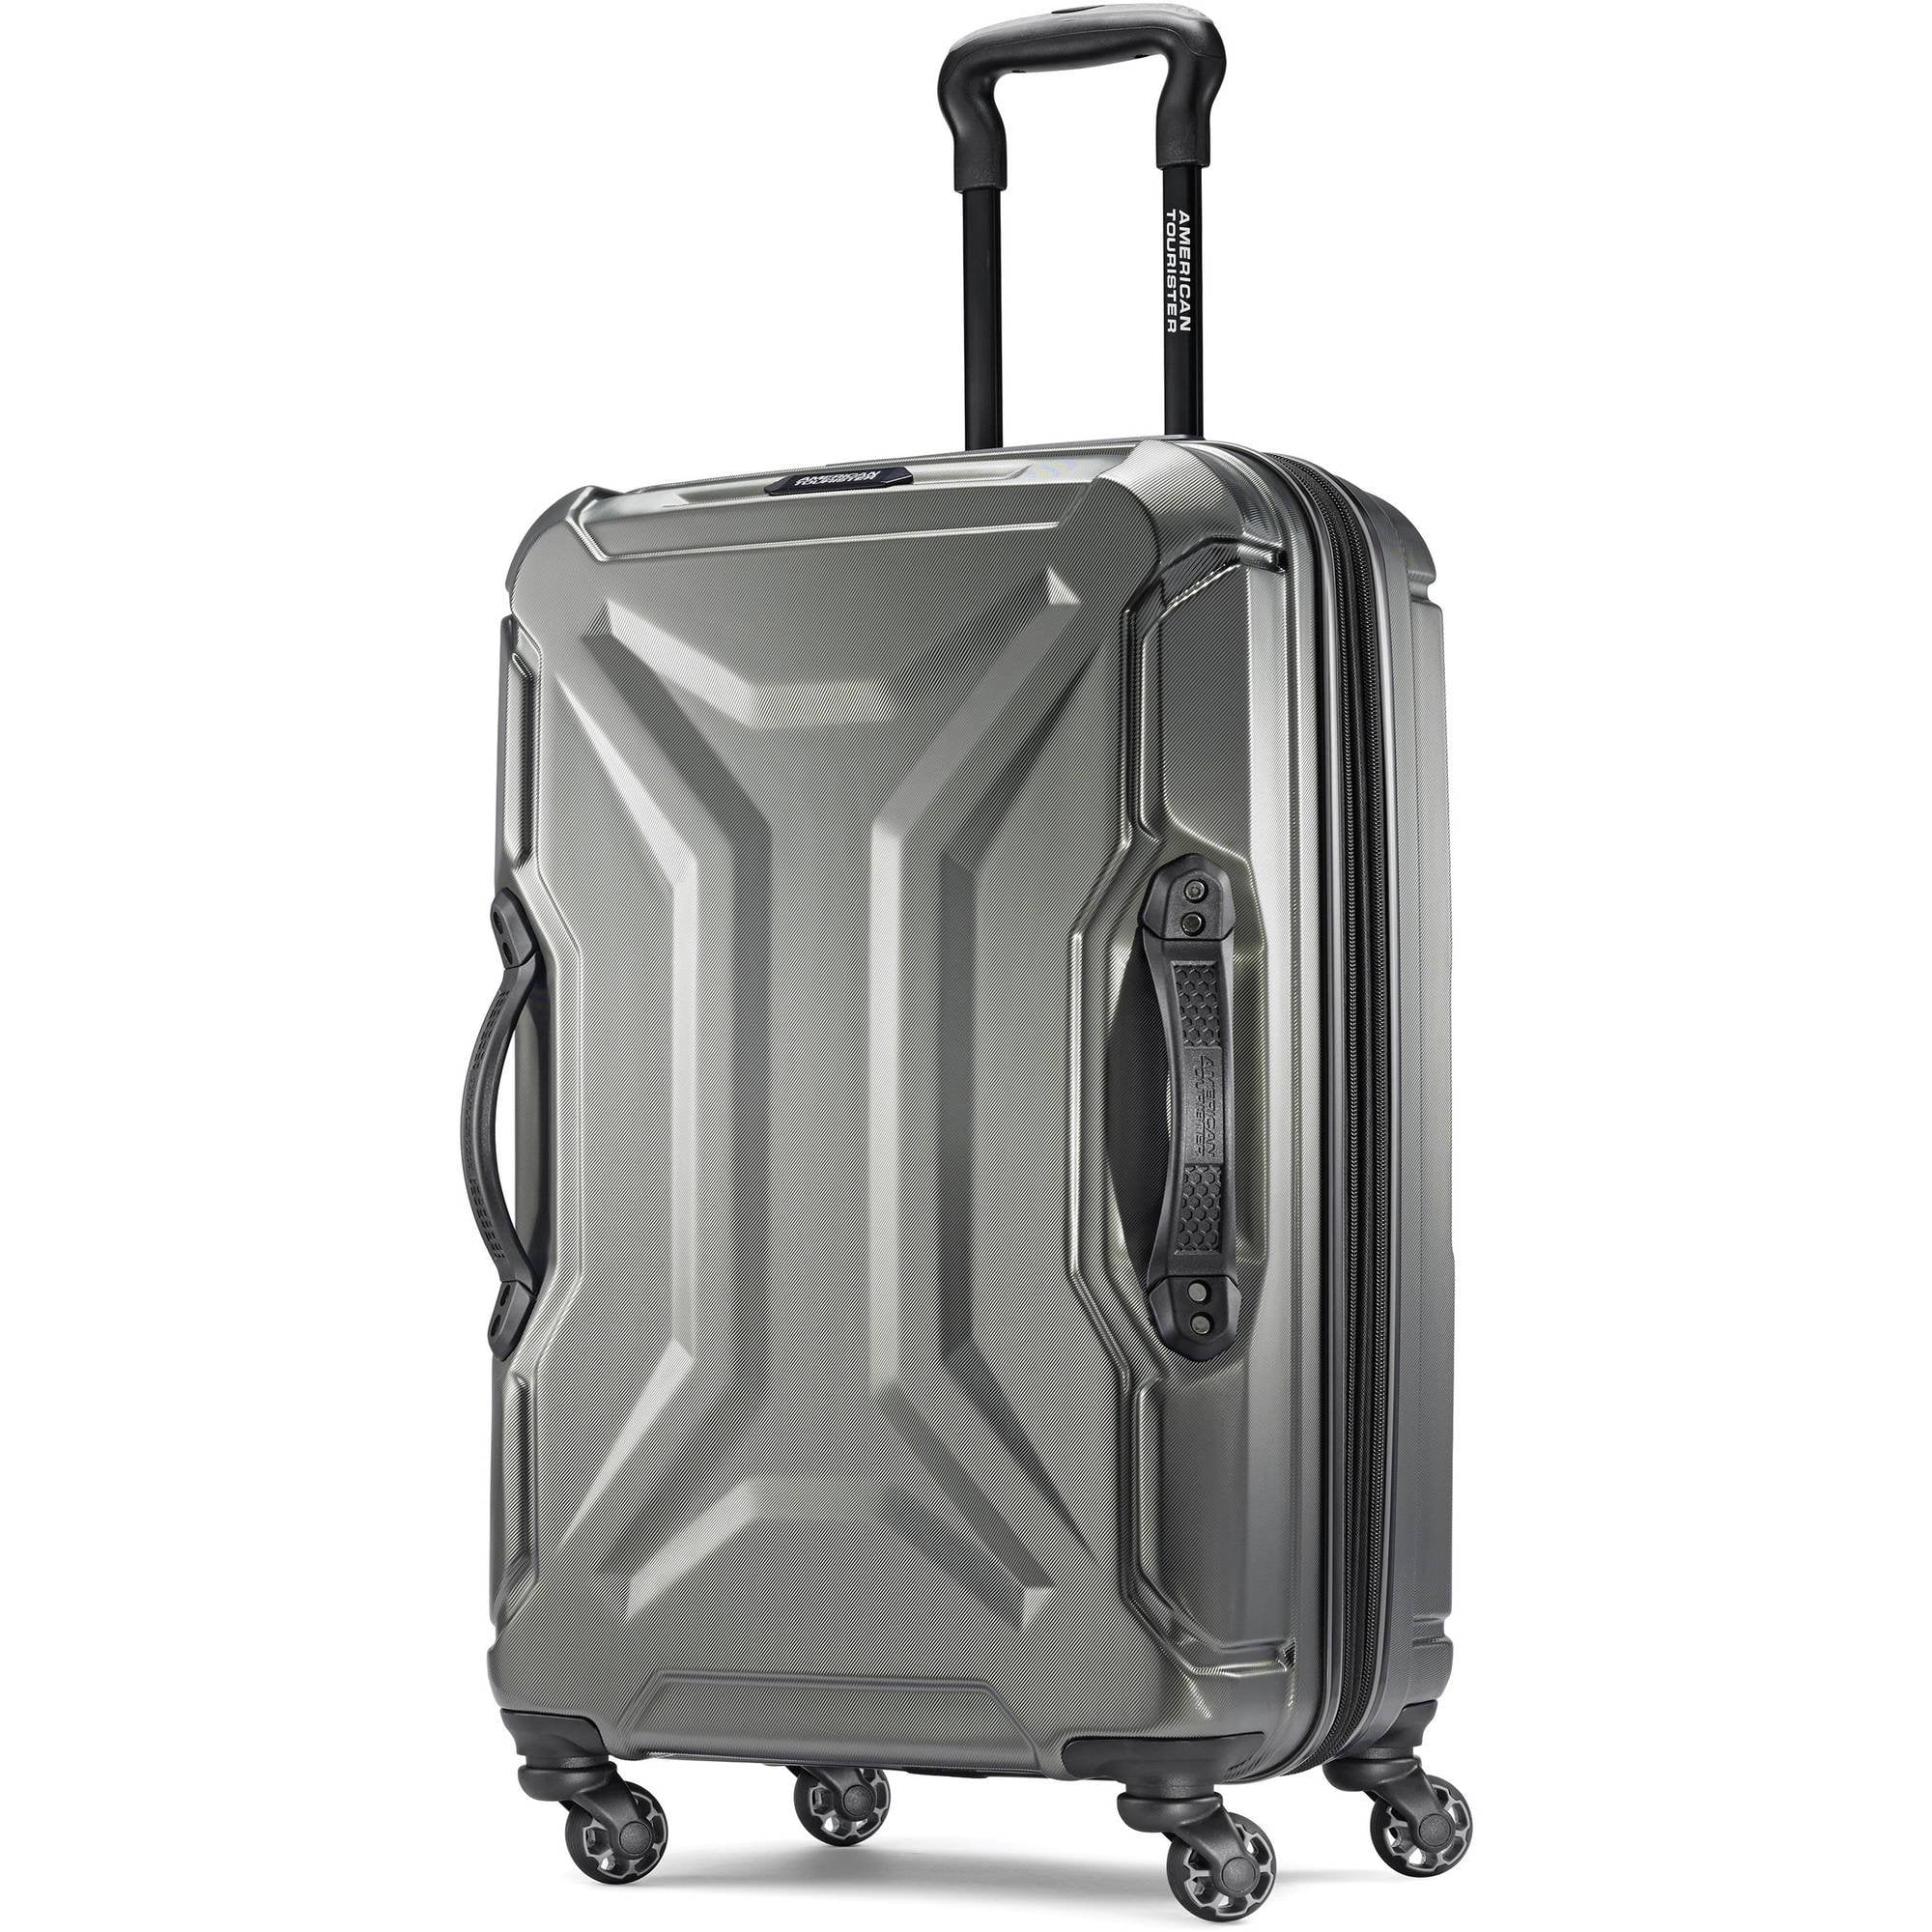 Berigelse Uskyldig Krage American Tourister Cargo Max 25" Hardside Spinner Luggage, Olive -  Walmart.com